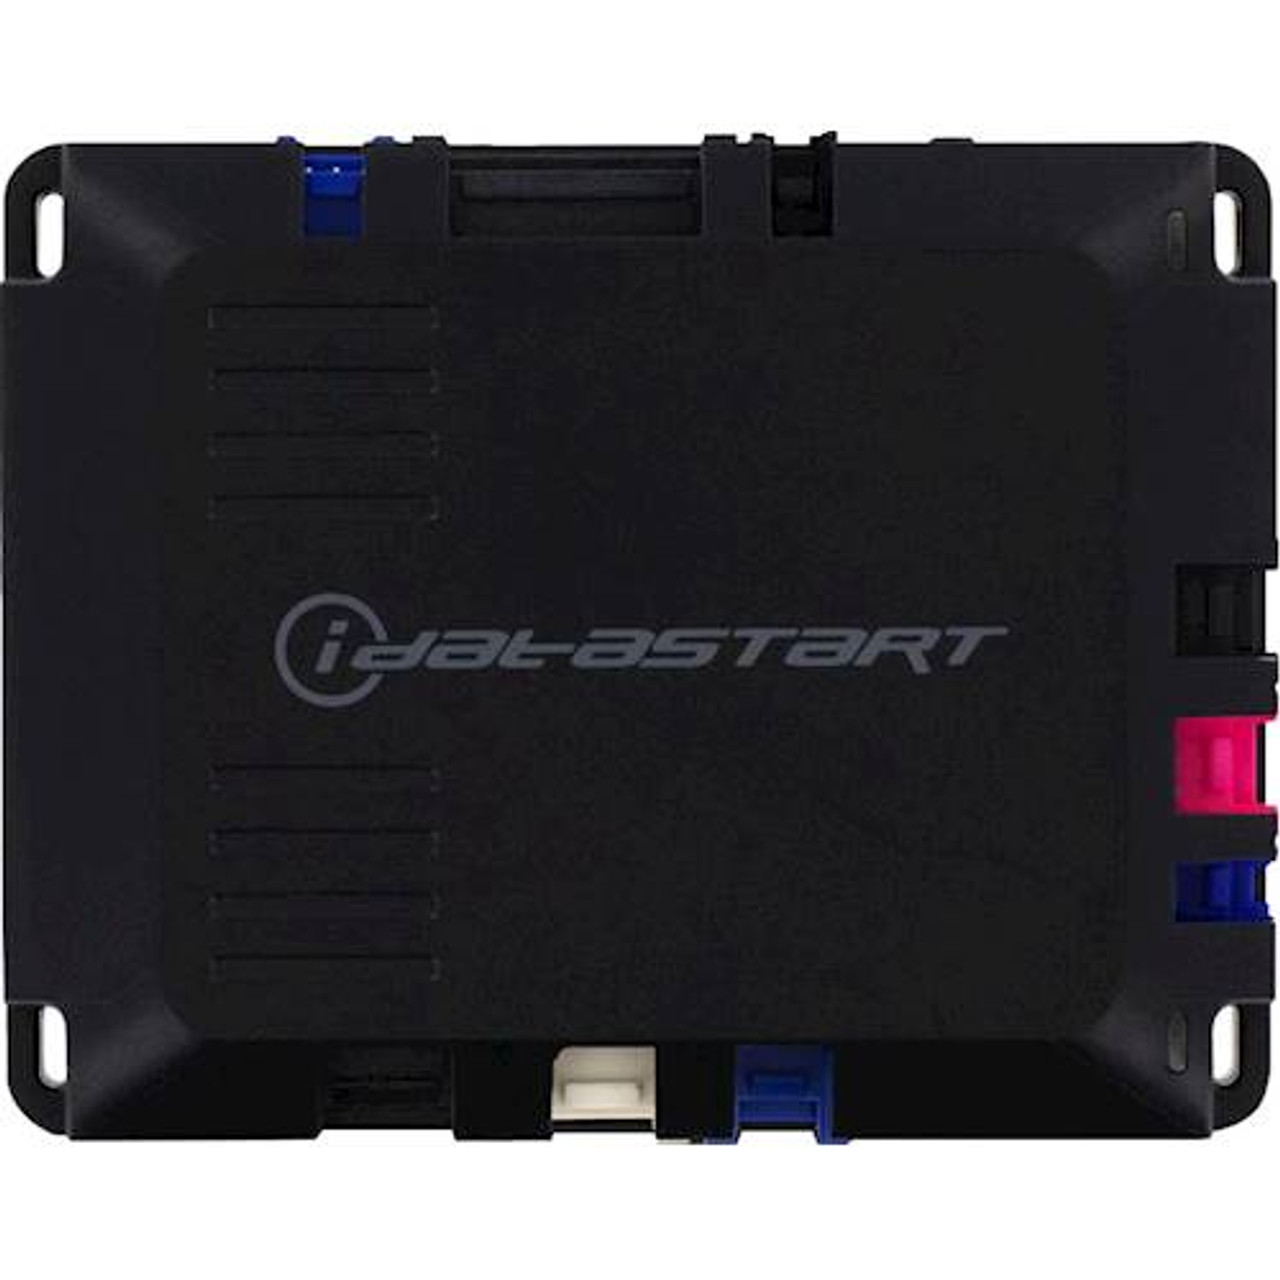 iDataStart - VWX Remote Start System - Black